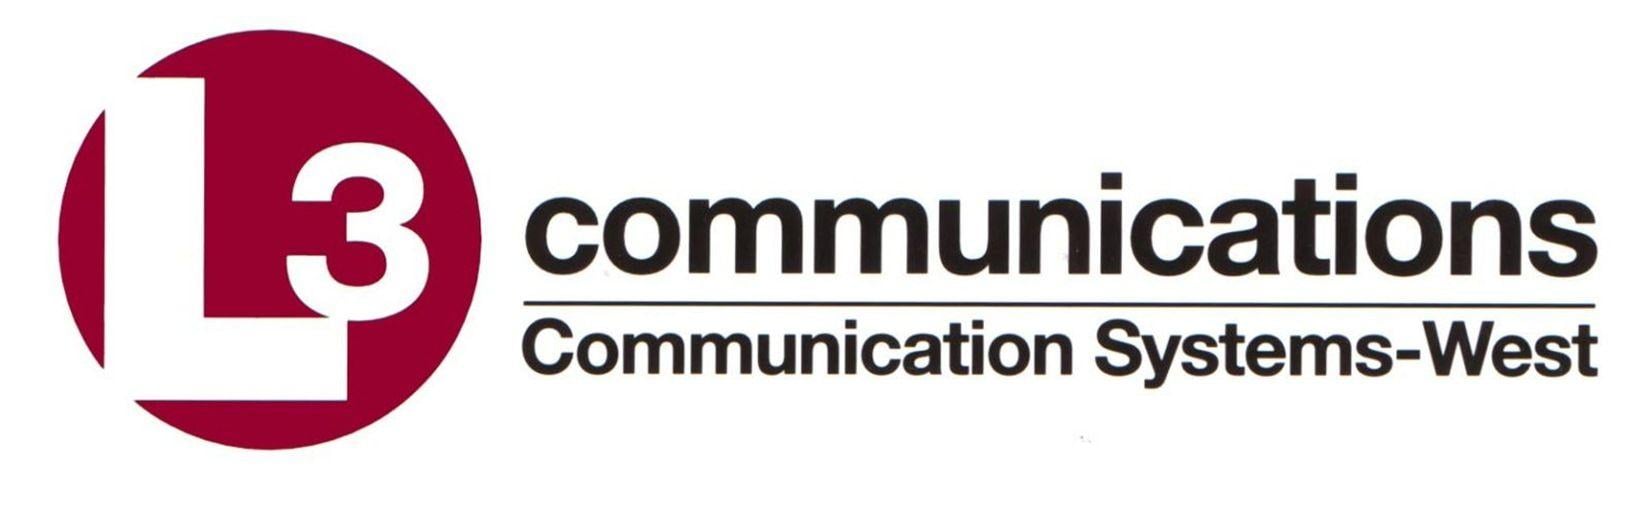 L-3 Communications Logo - L3 Communications Logo